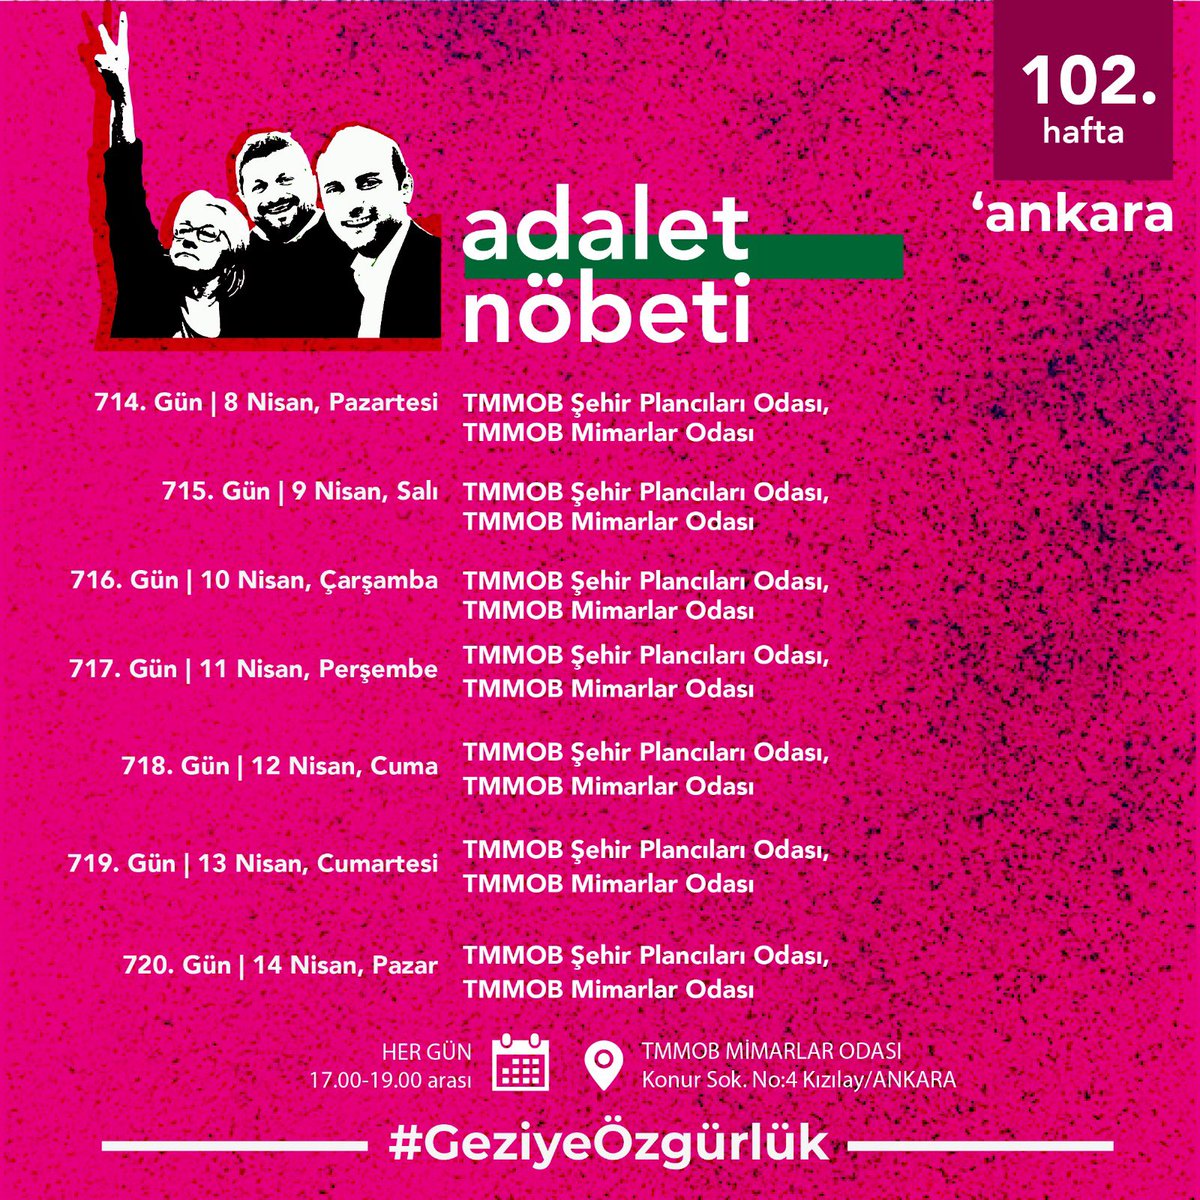 102. Hafta | Ankara Adalet Nöbeti’nin nöbet programı 🗓 Her gün ⏰ 17.00-19.00 📍 TMMOB Mimarlar Odası #GeziyeÖzgürlük #GeziyiSavunuyoruz